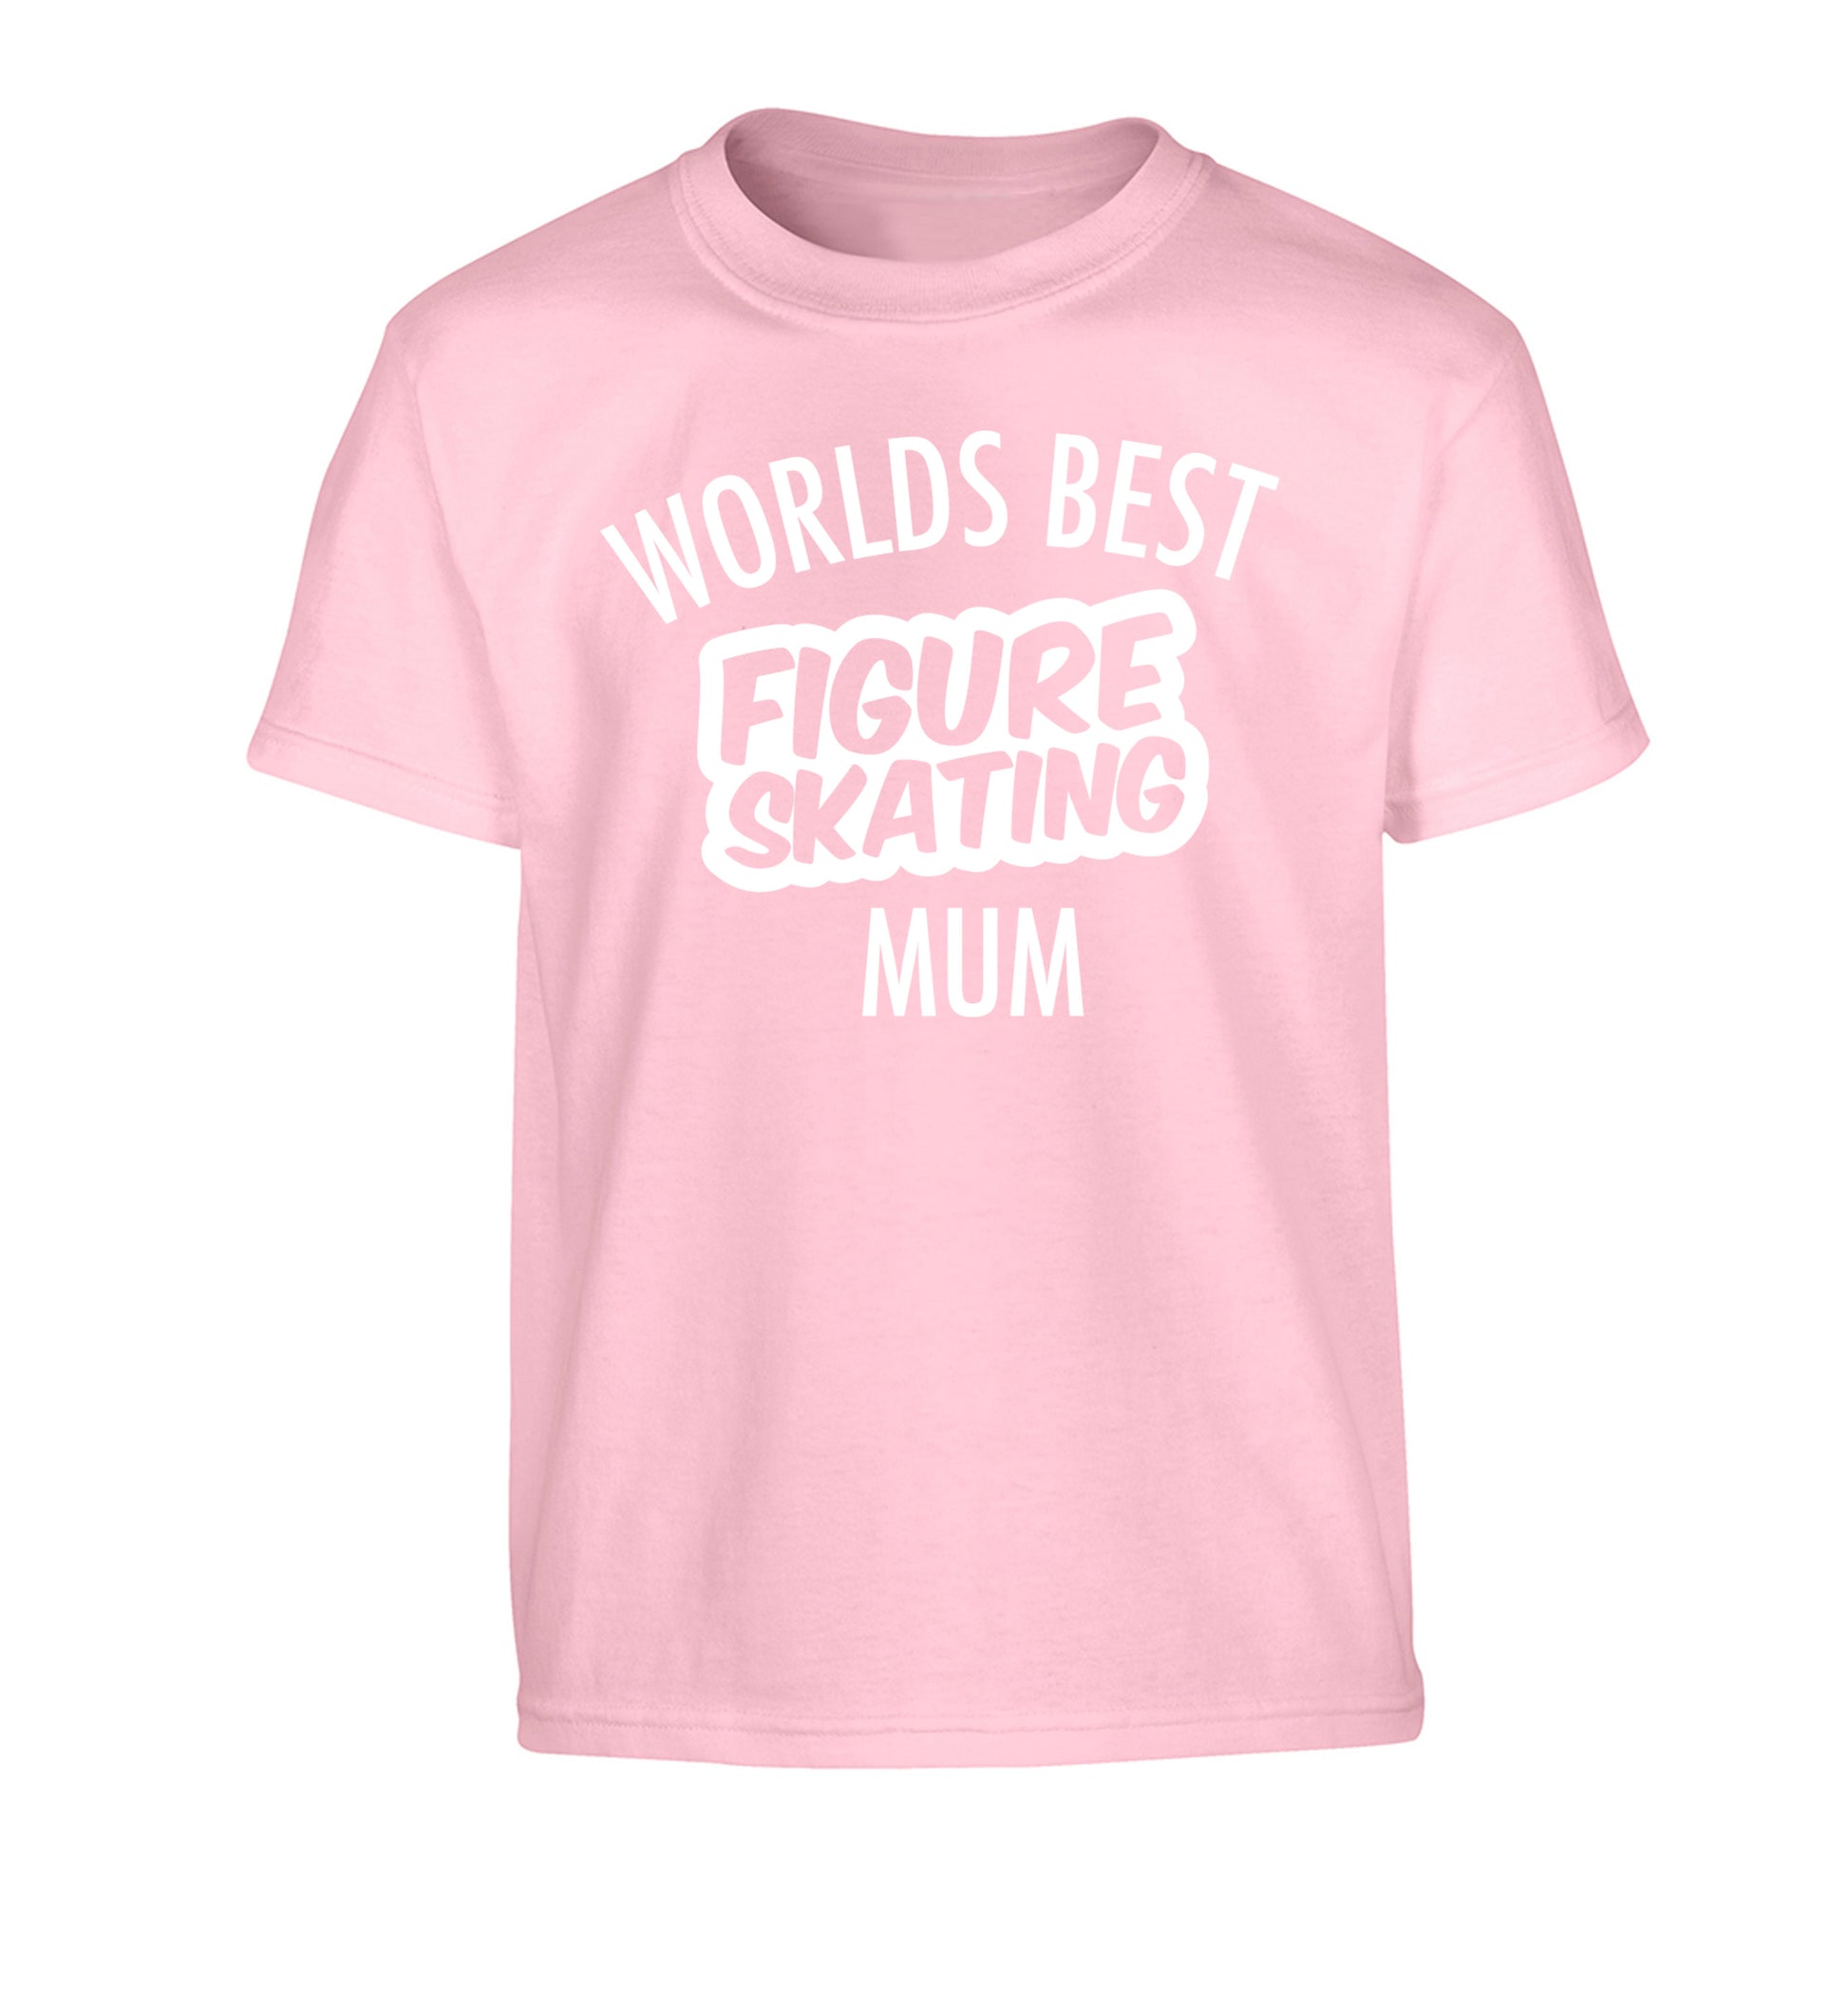 Worlds best figure skating mum Children's light pink Tshirt 12-14 Years